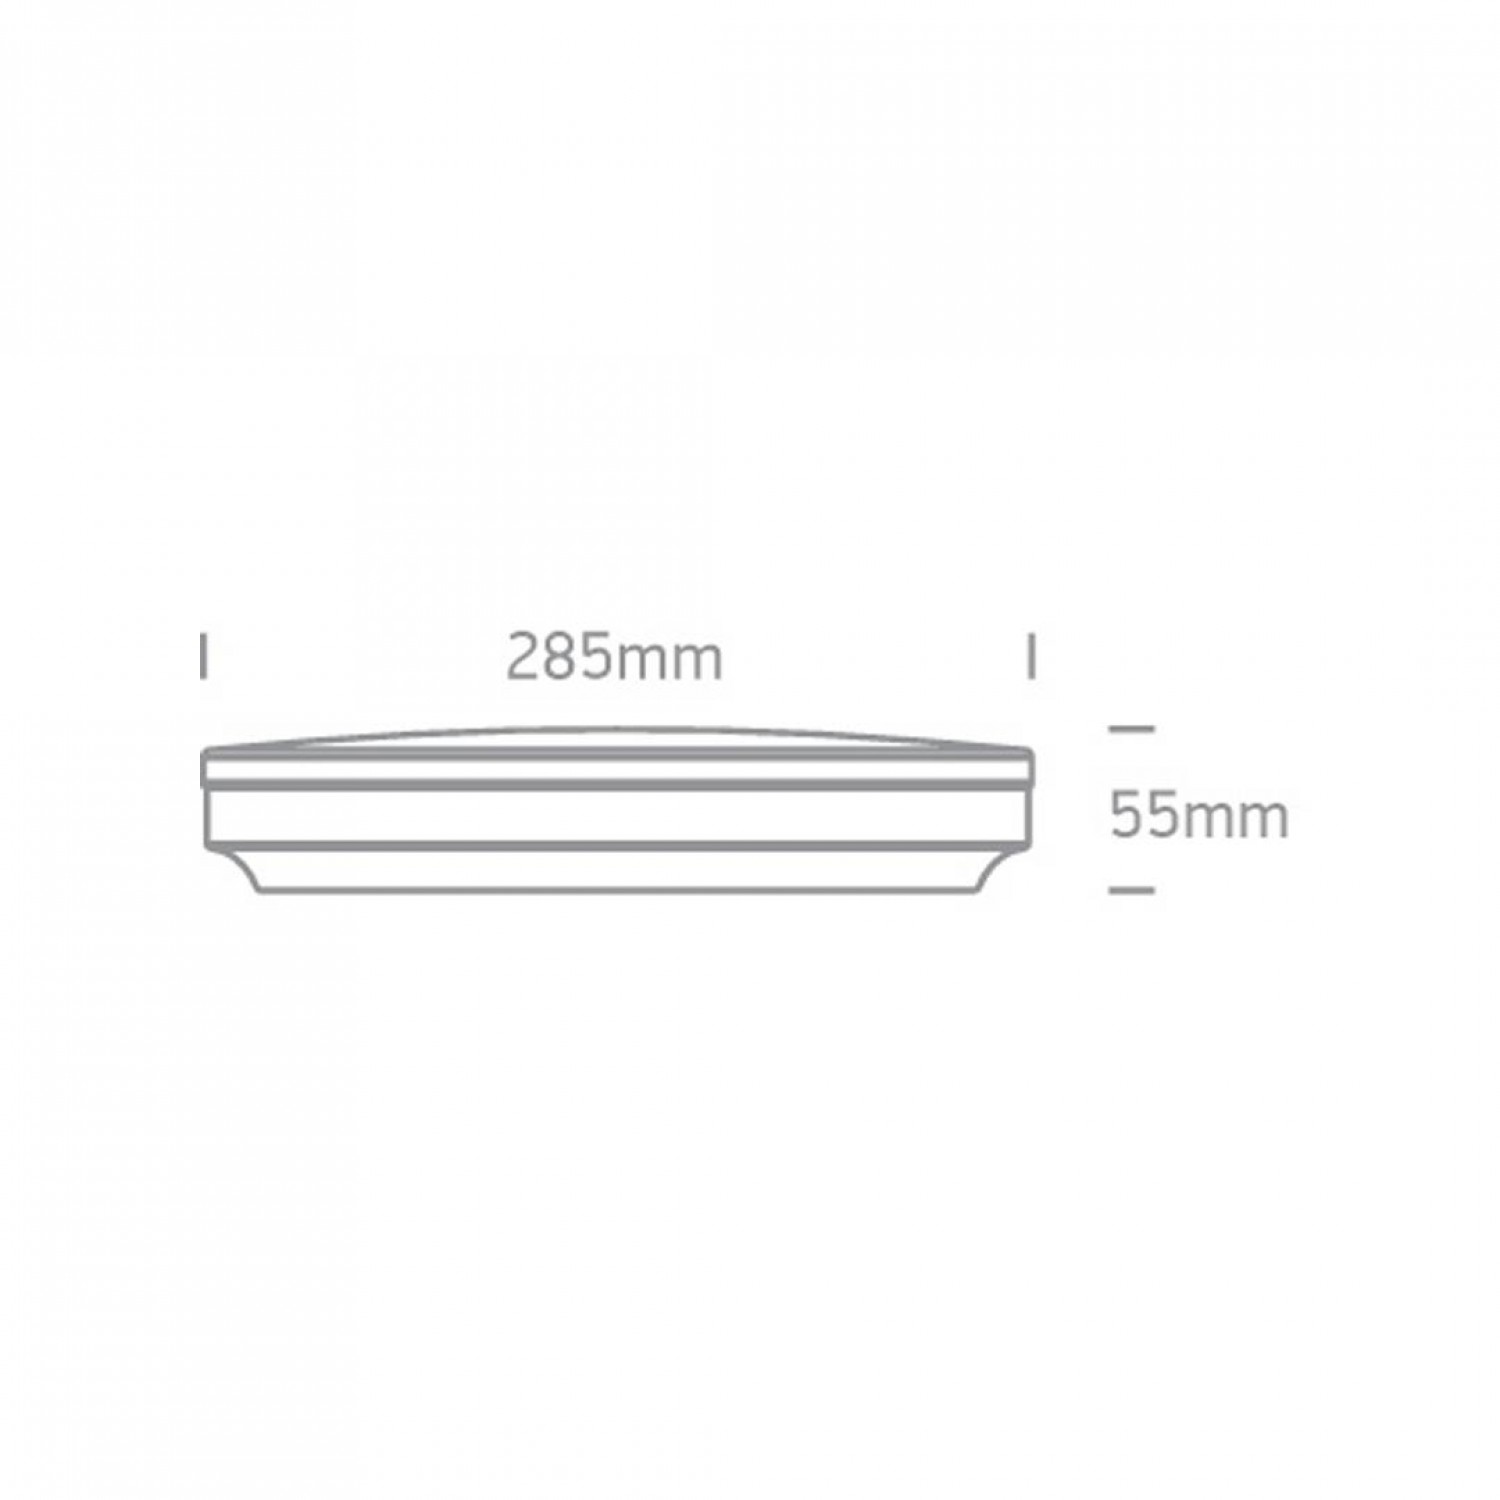 Світильник ONE Light LED Slim Plafo Range Round 62022A/W/W